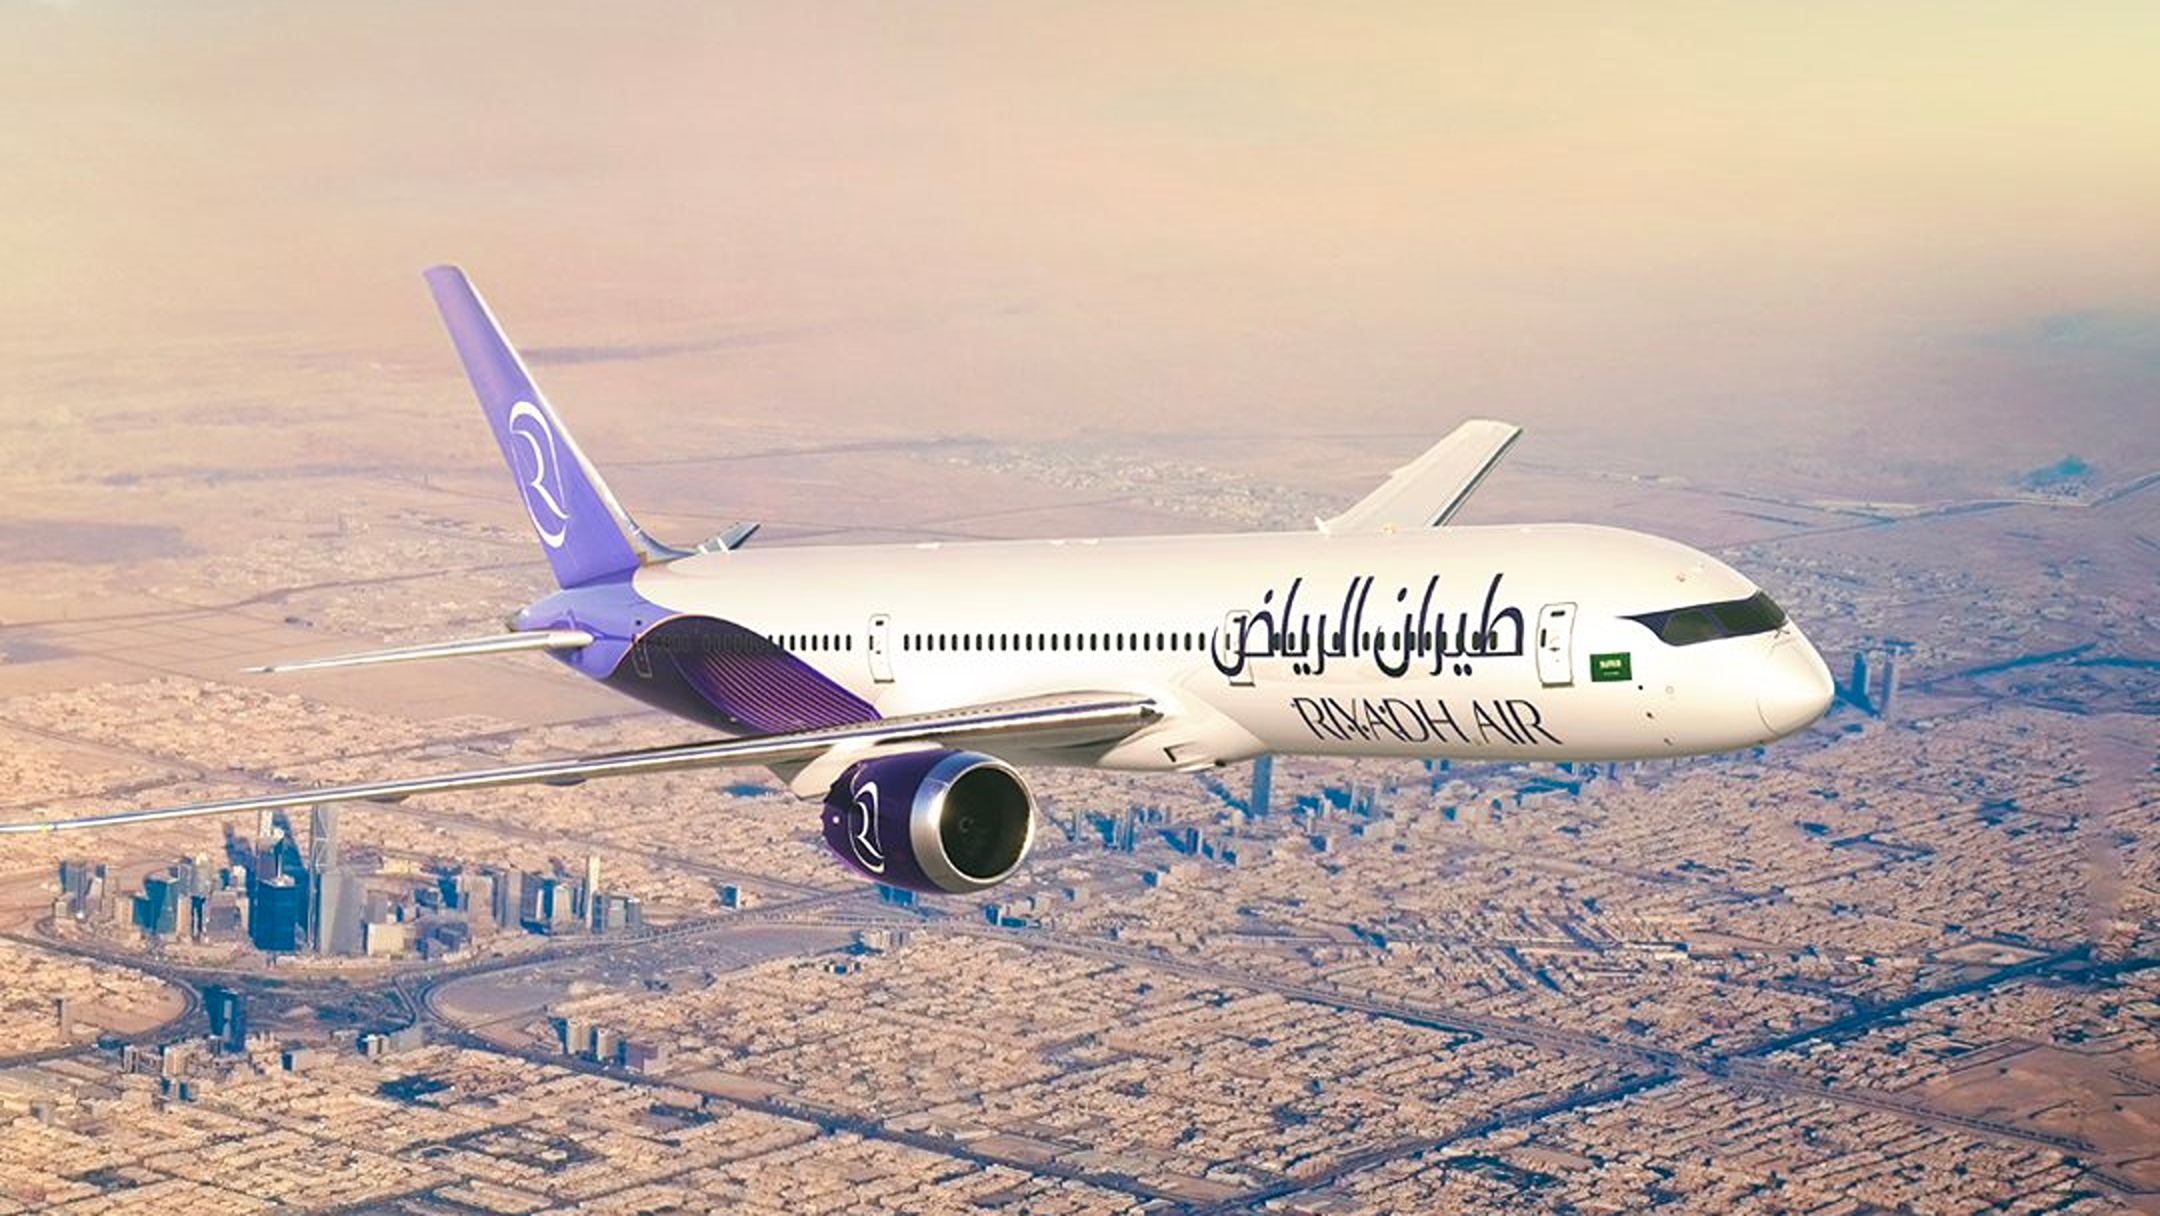 Riyadh Air's new white paint job